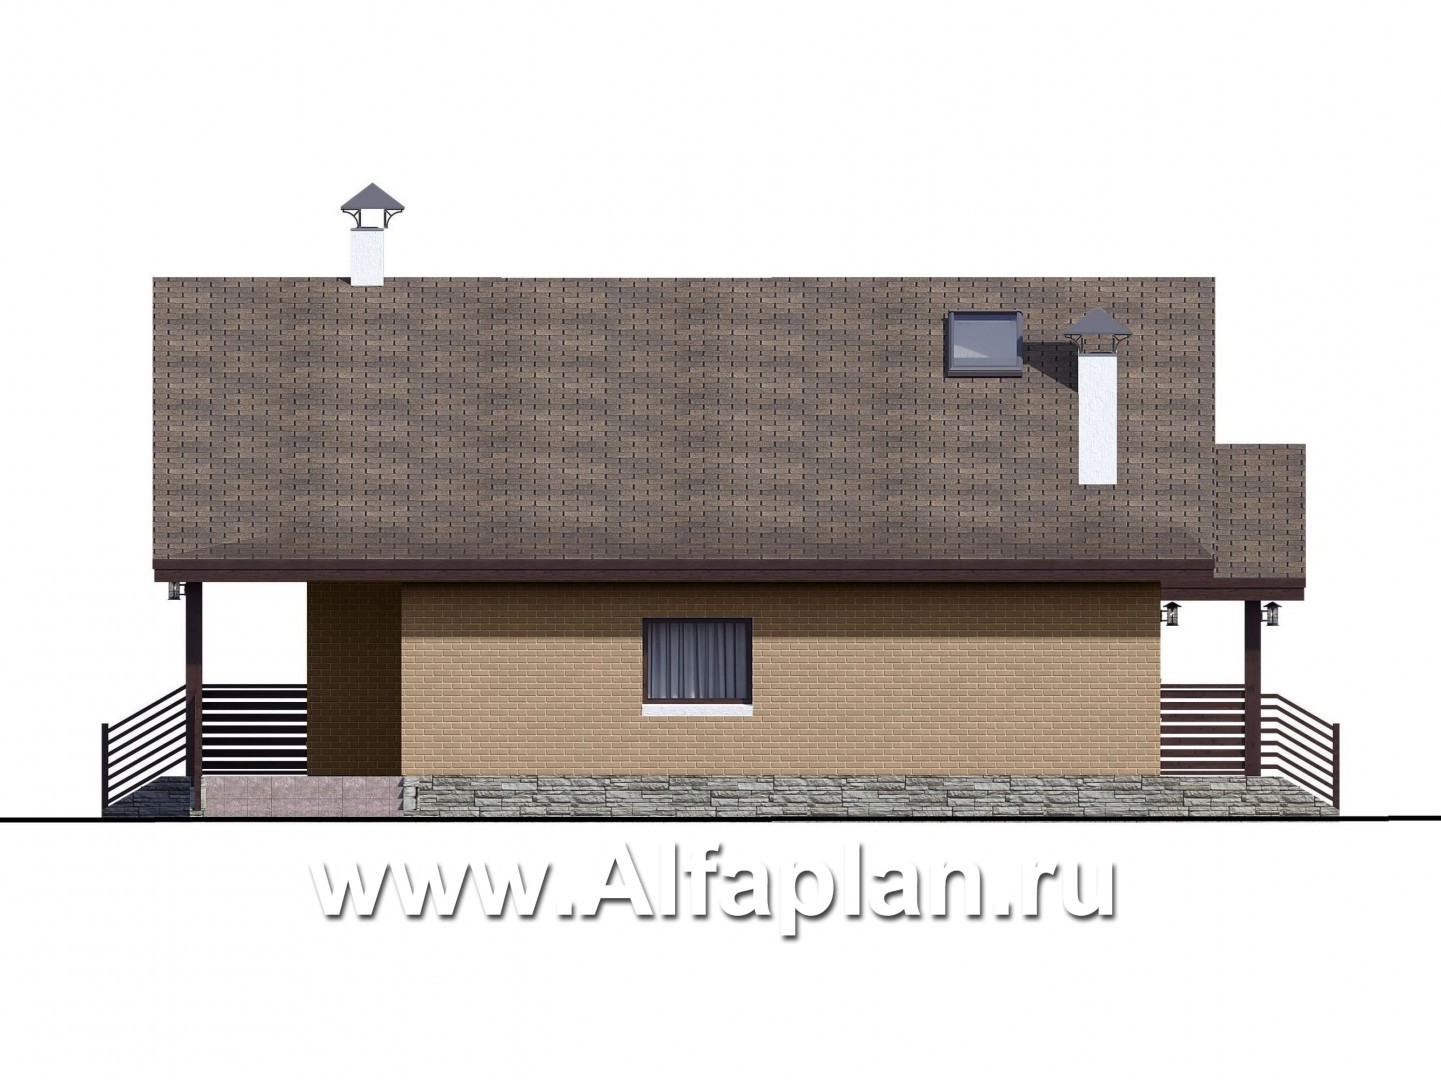 Проекты домов Альфаплан - «Моризо» - проект дома с мансардой, планировка с двусветной гостиной и 2 спальни на 1 эт, шале с двускатной крышей - изображение фасада №2